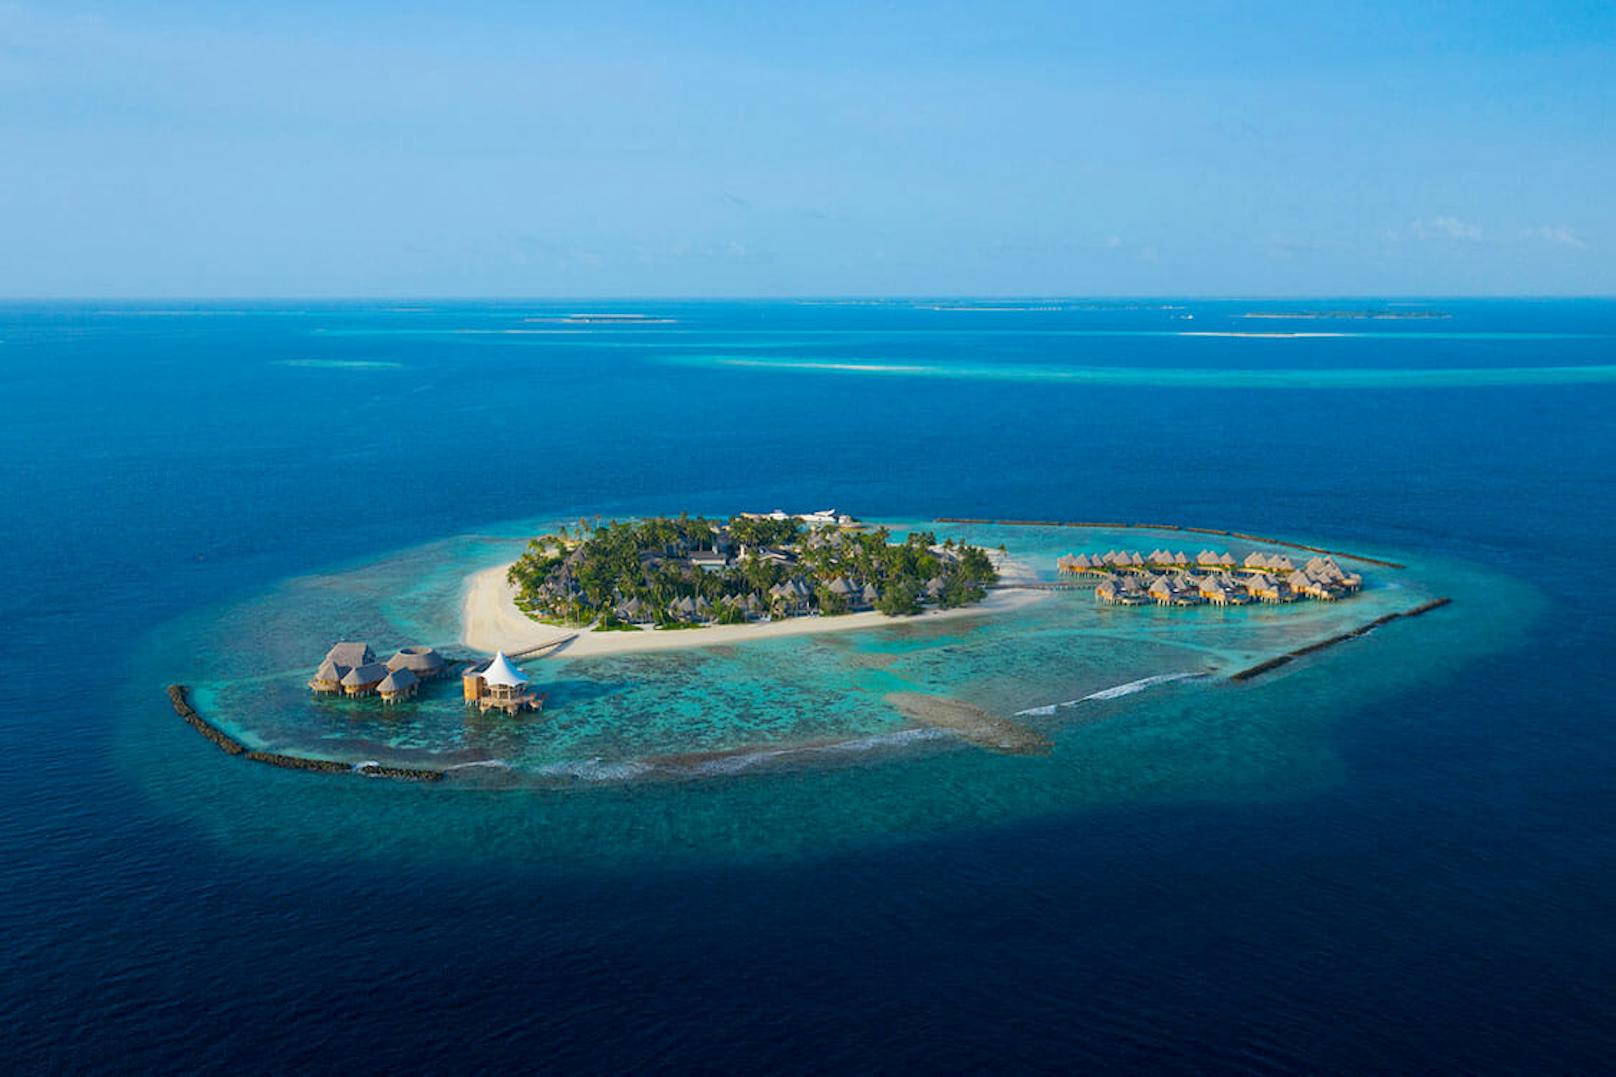 Das Urlaubsresort "The Nautilus Maldives" bietet all jenen, die derzeit im Homeoffice arbeiten, ein Büro am Strand.